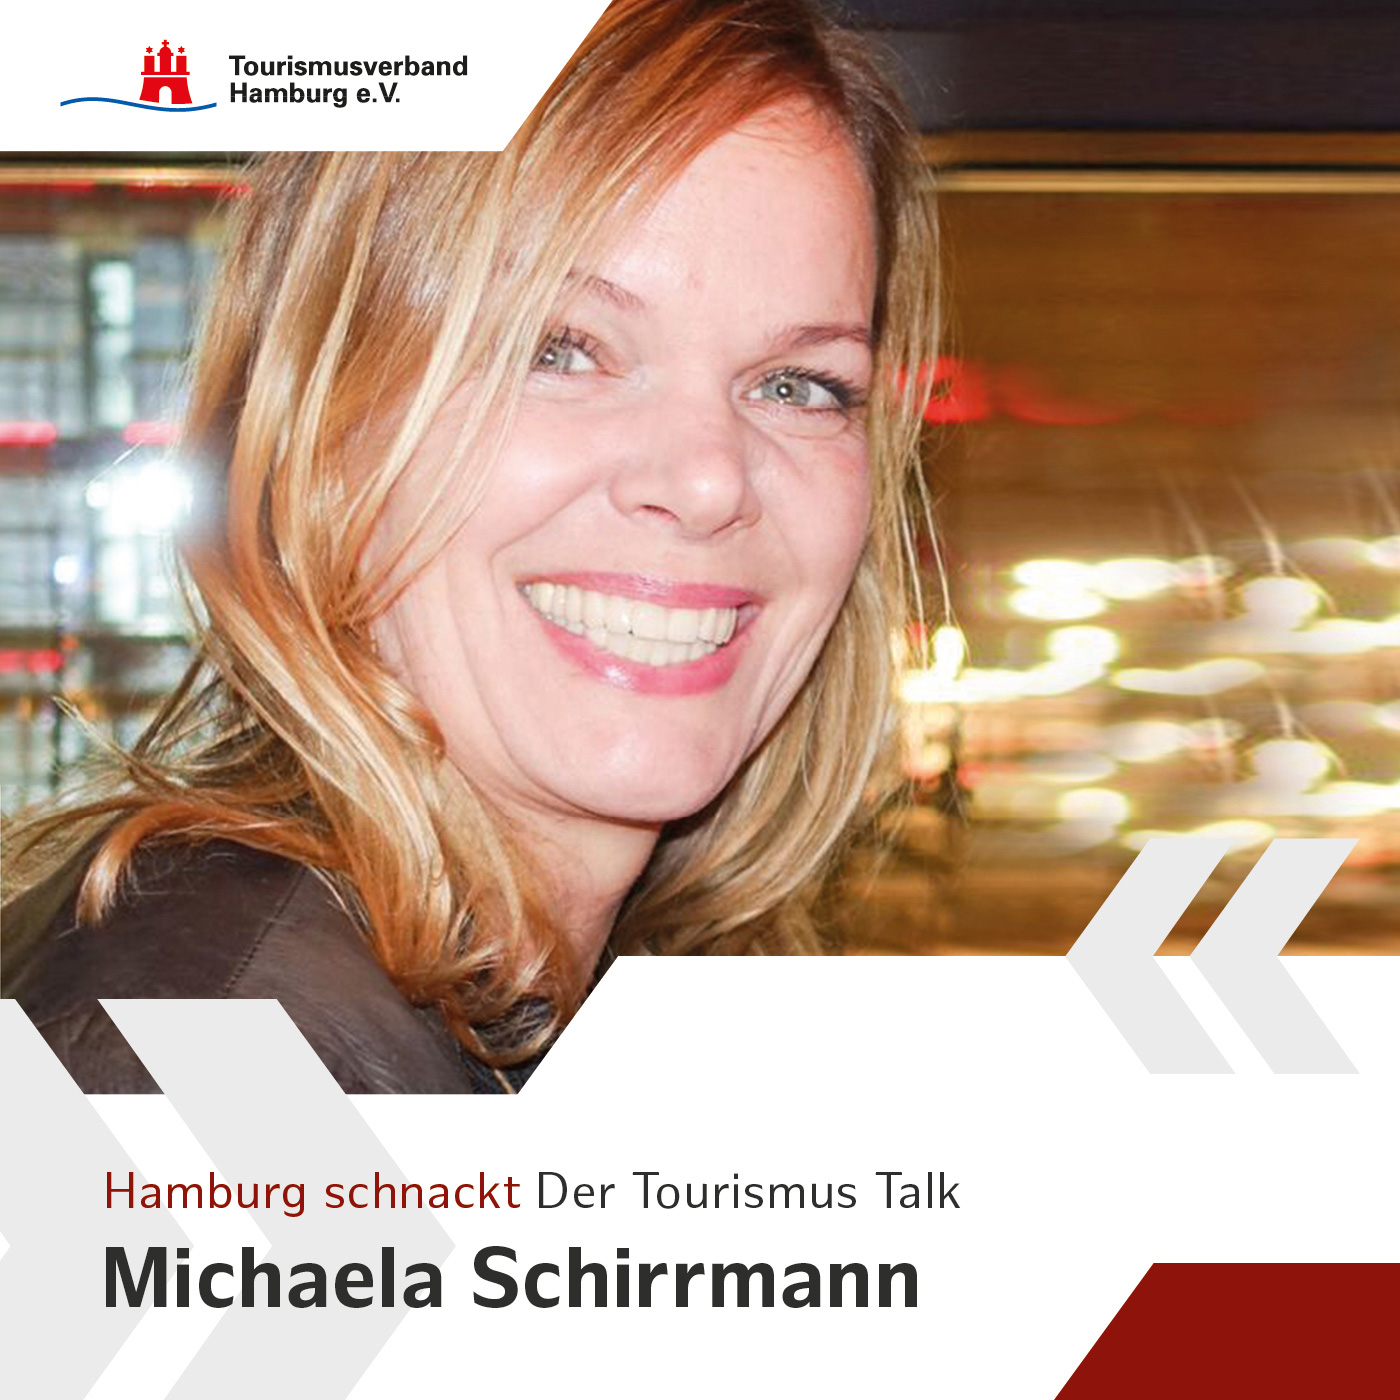 Hamburg schnackt mit Michaela Schirrmann